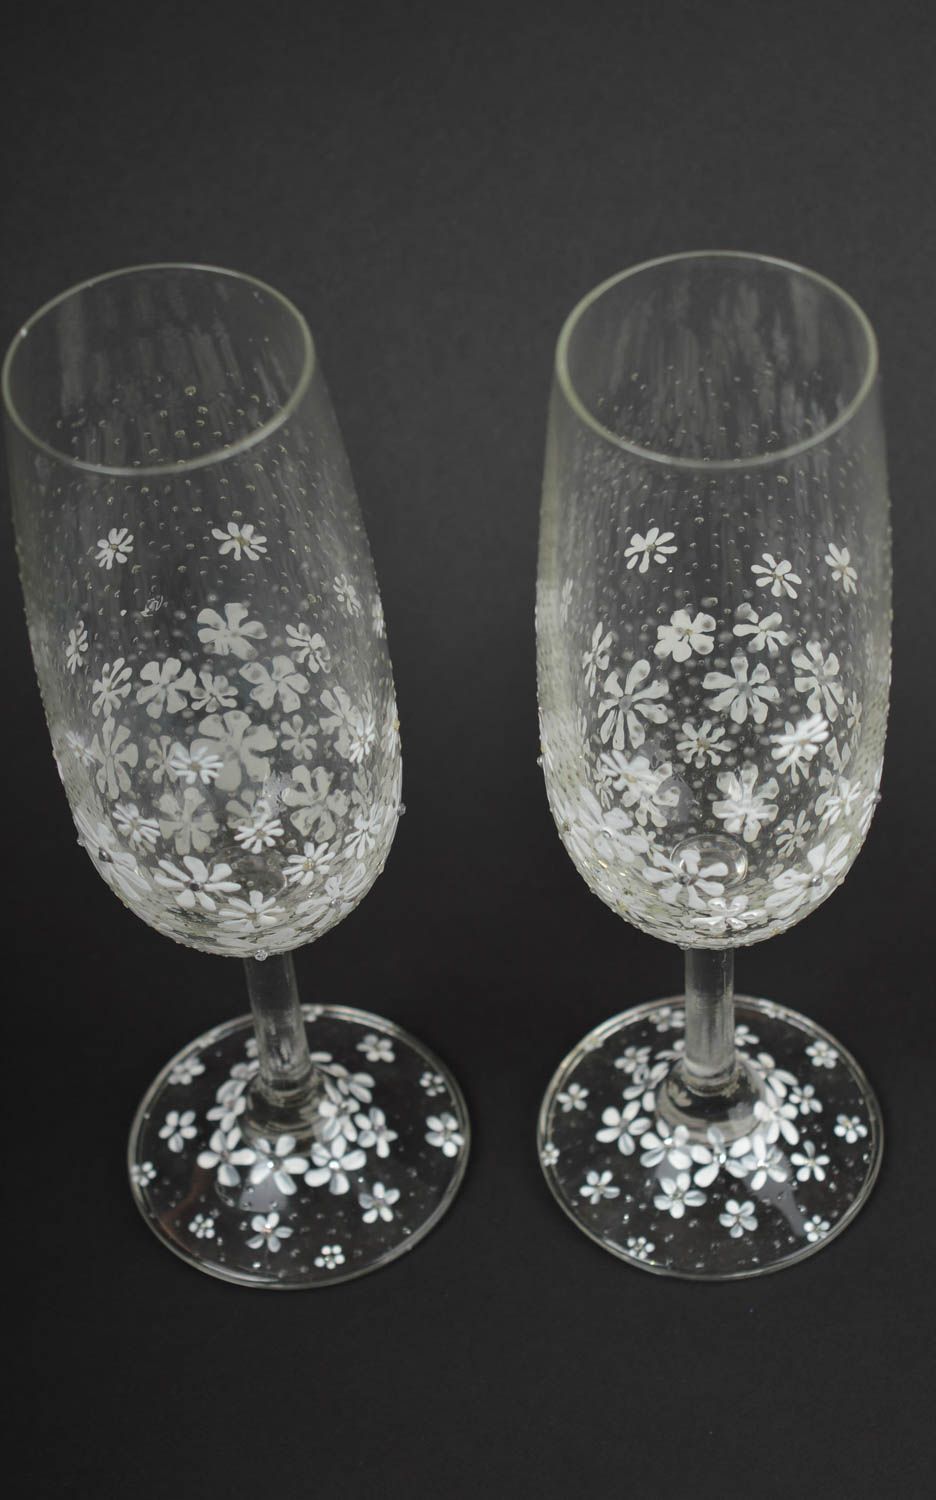 Handmade glasses designer glasses for wedding gift ideas wedding decor photo 3